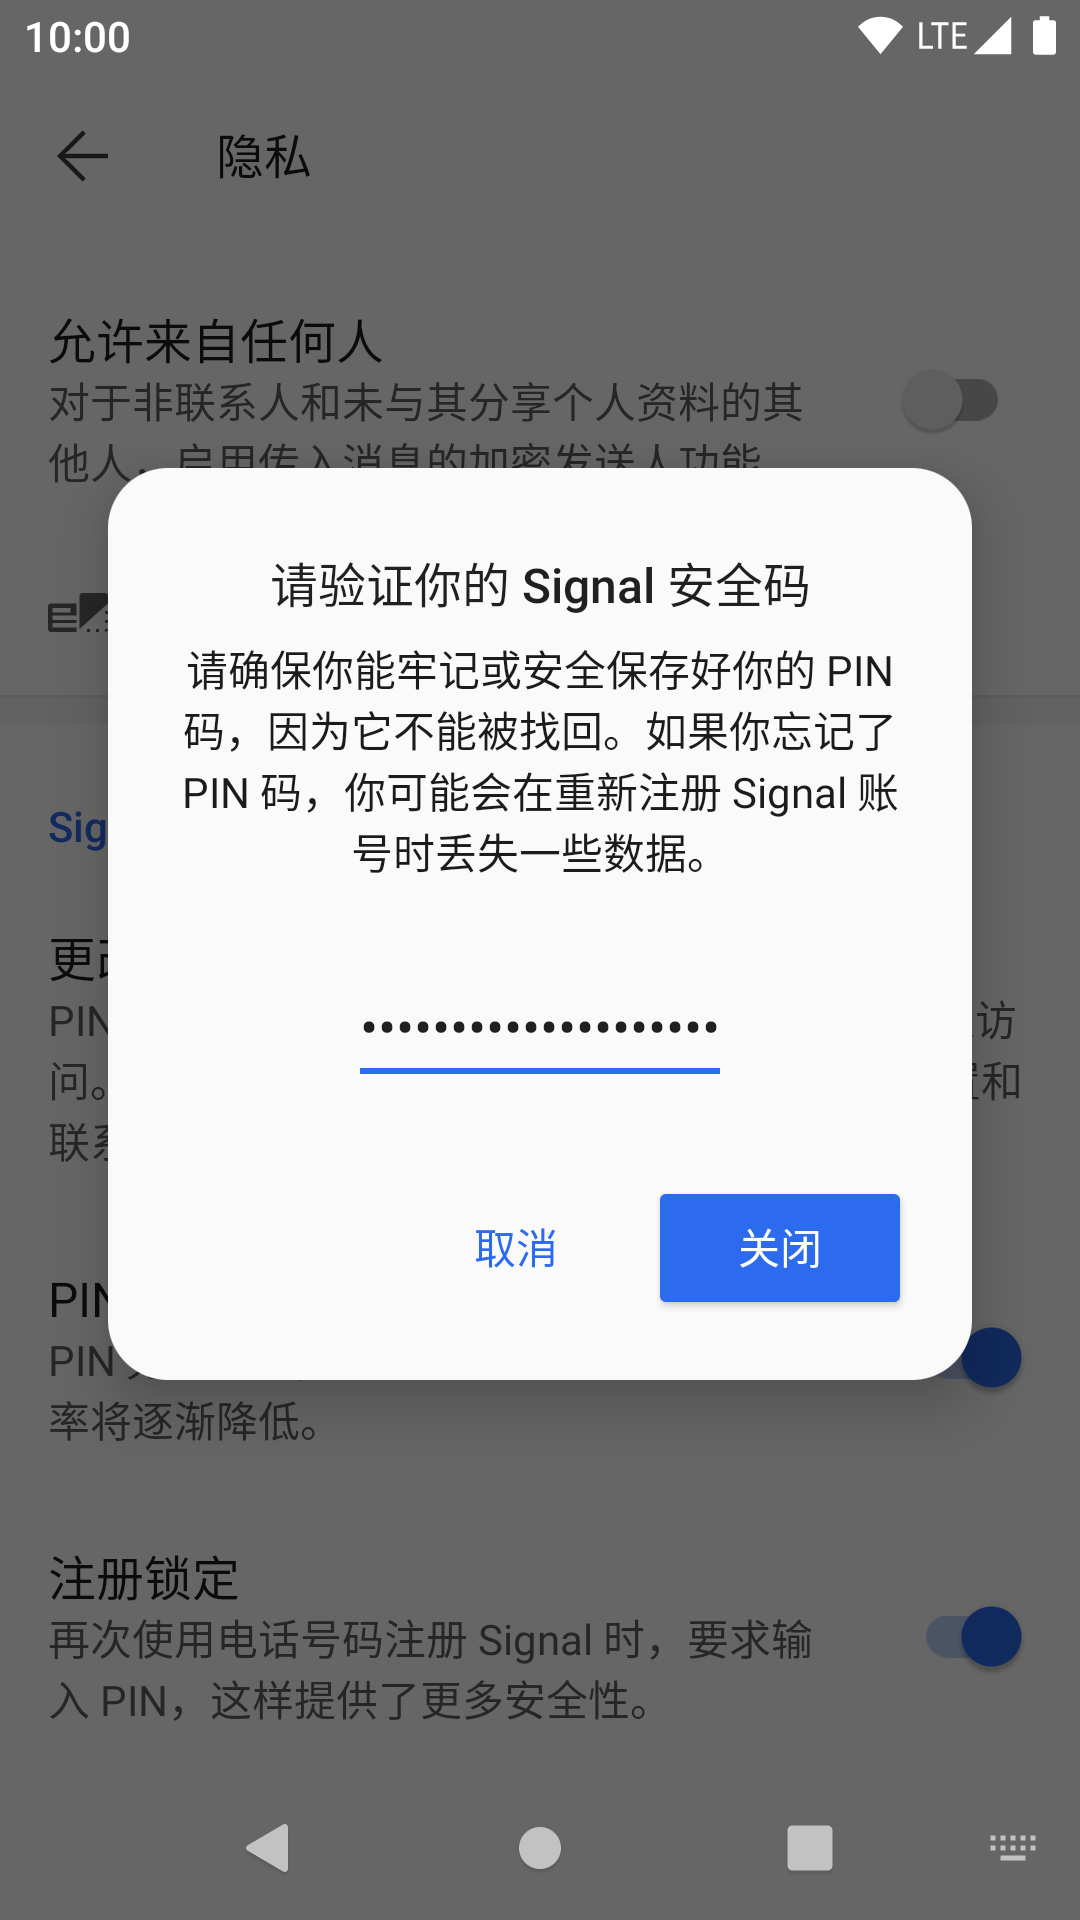 Signal 禁用 PIN 提醒